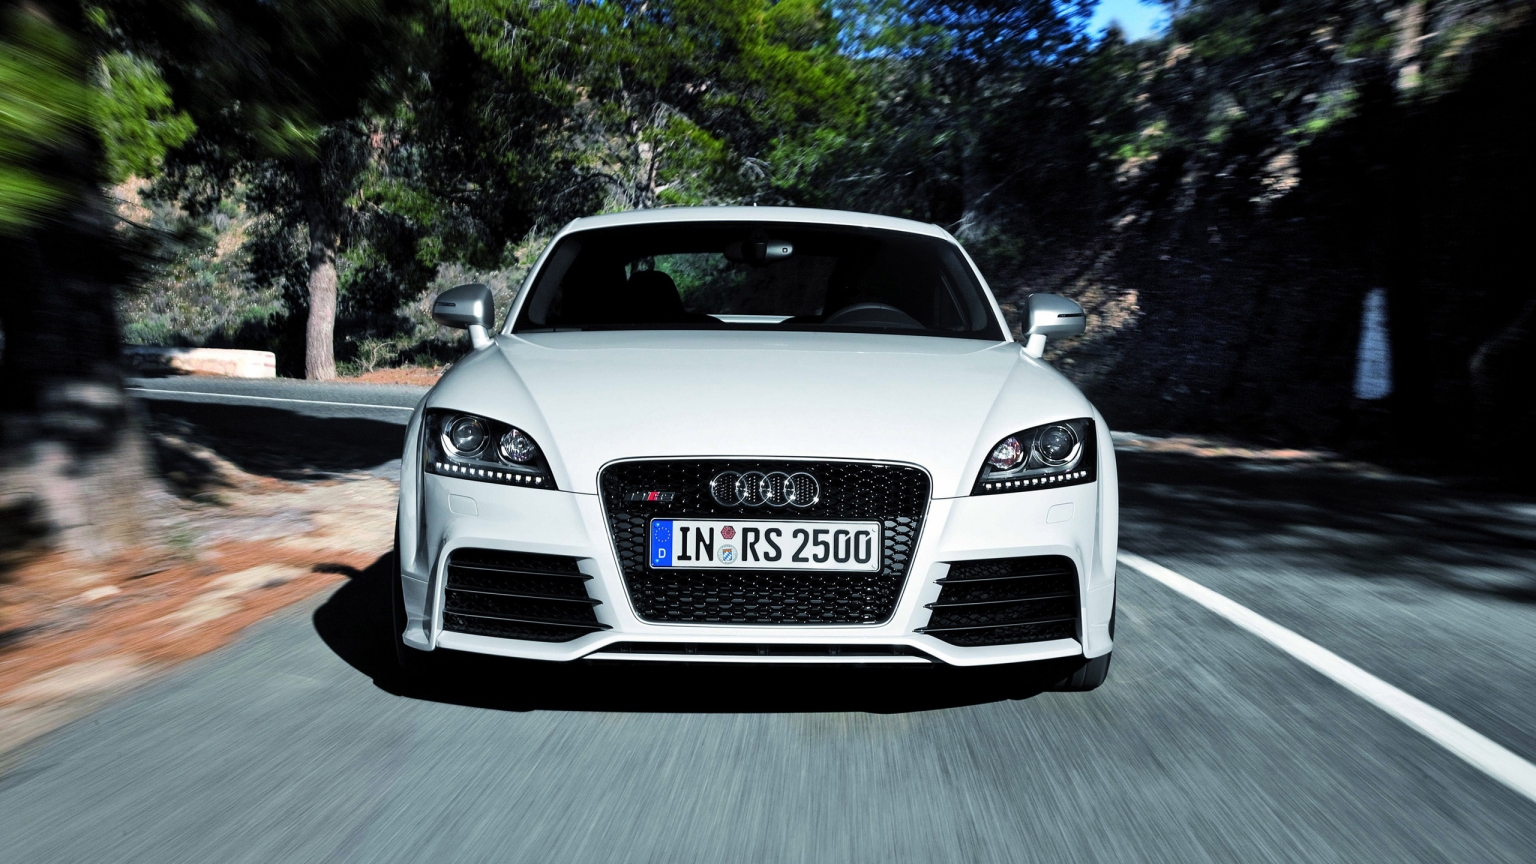 Audi TT RS 2012 Speed for 1536 x 864 HDTV resolution